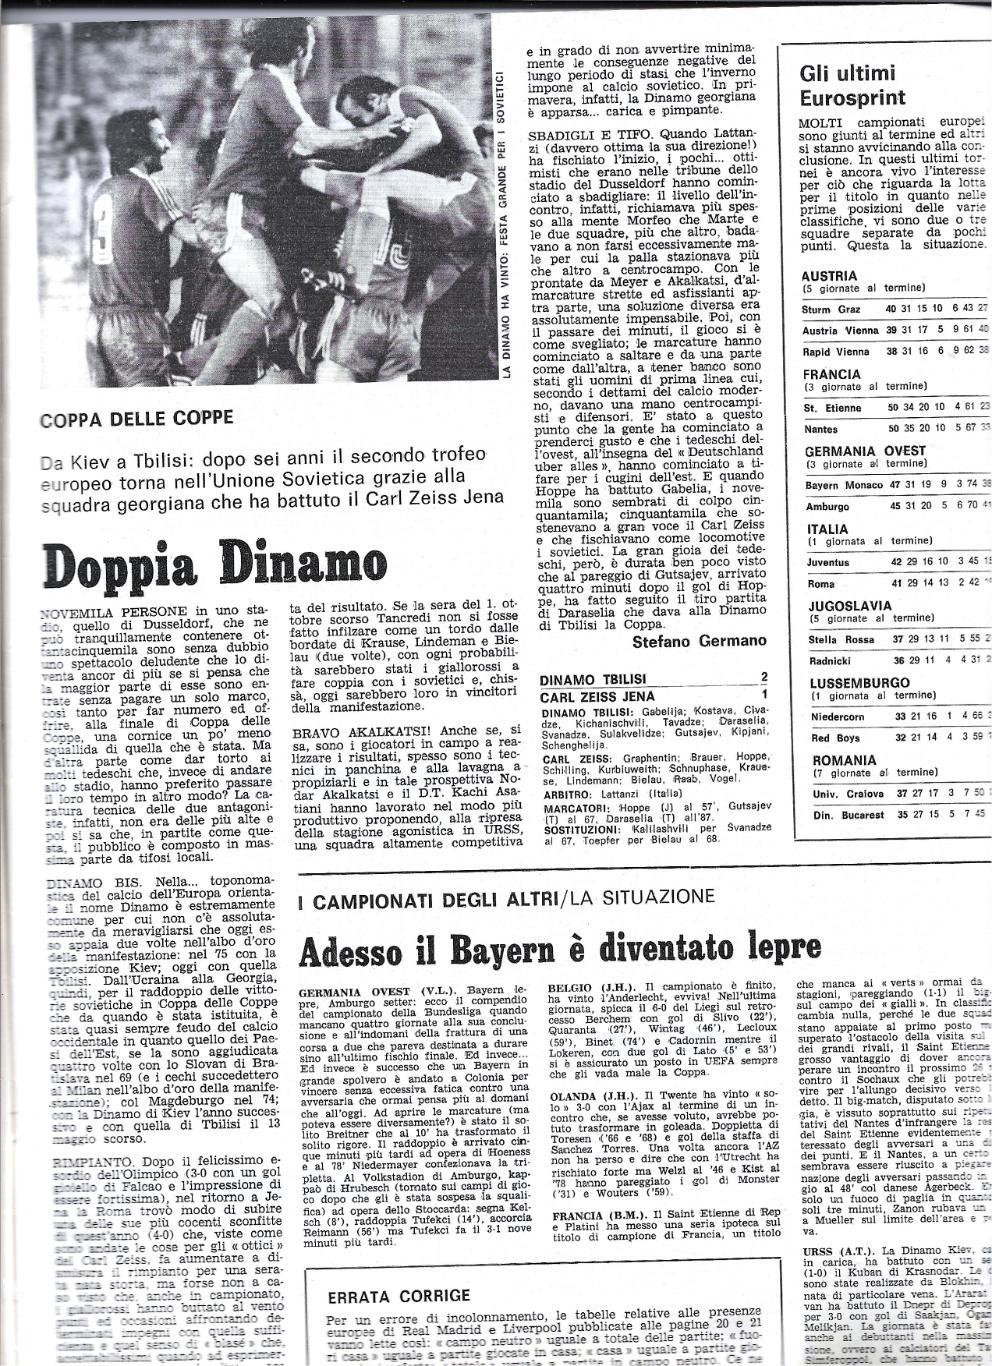 журнал GUERIN_SPORTIVO # 21 (338) 1981_Italy_обзор финала Д Тбилиси-Карл_Цейсс 1